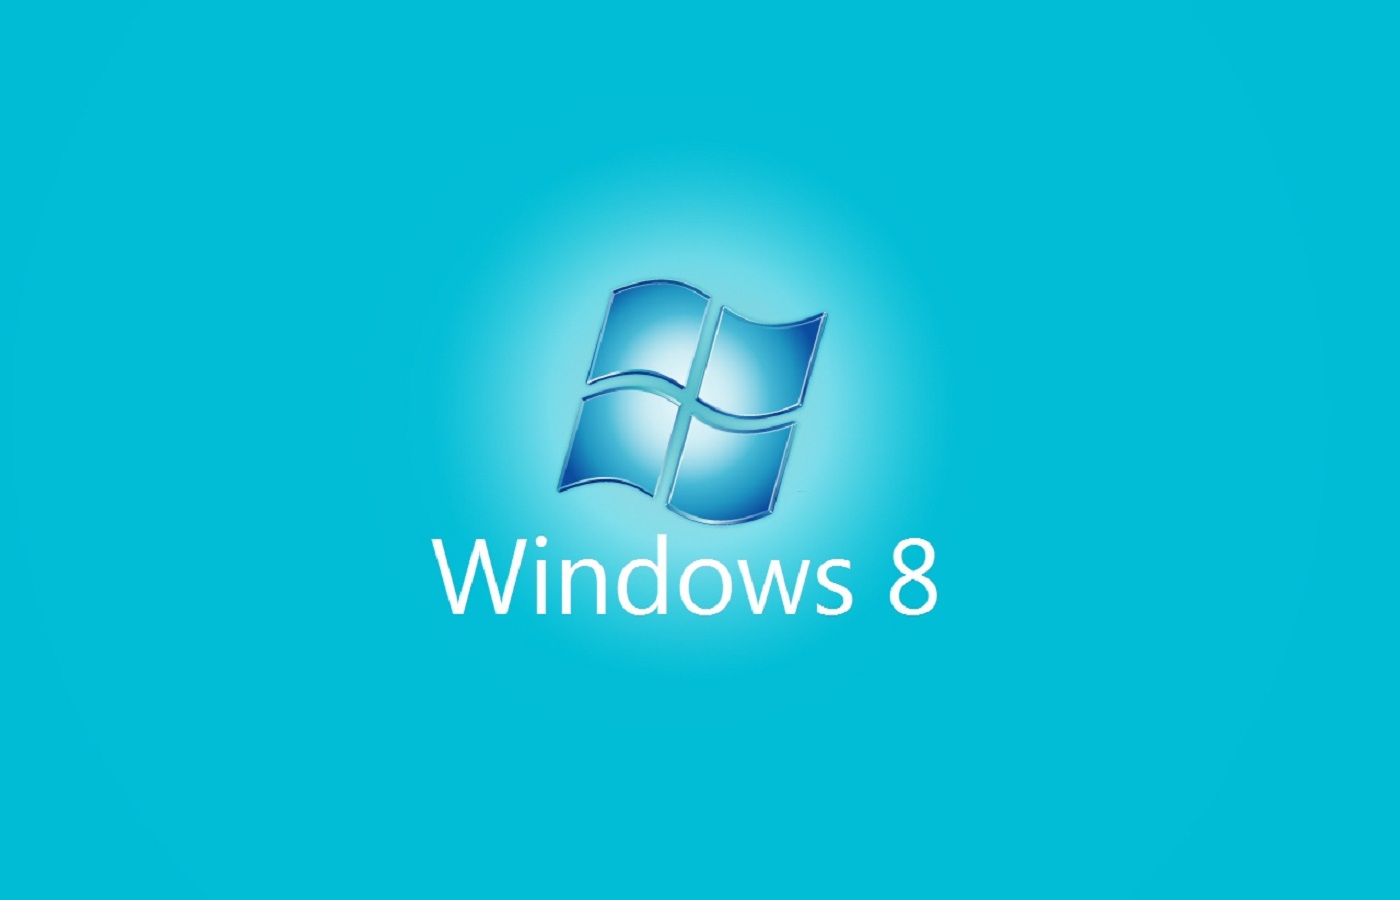 Wallpaper Prehe: Windows Wallpaper:Windows 8 Wallpapers